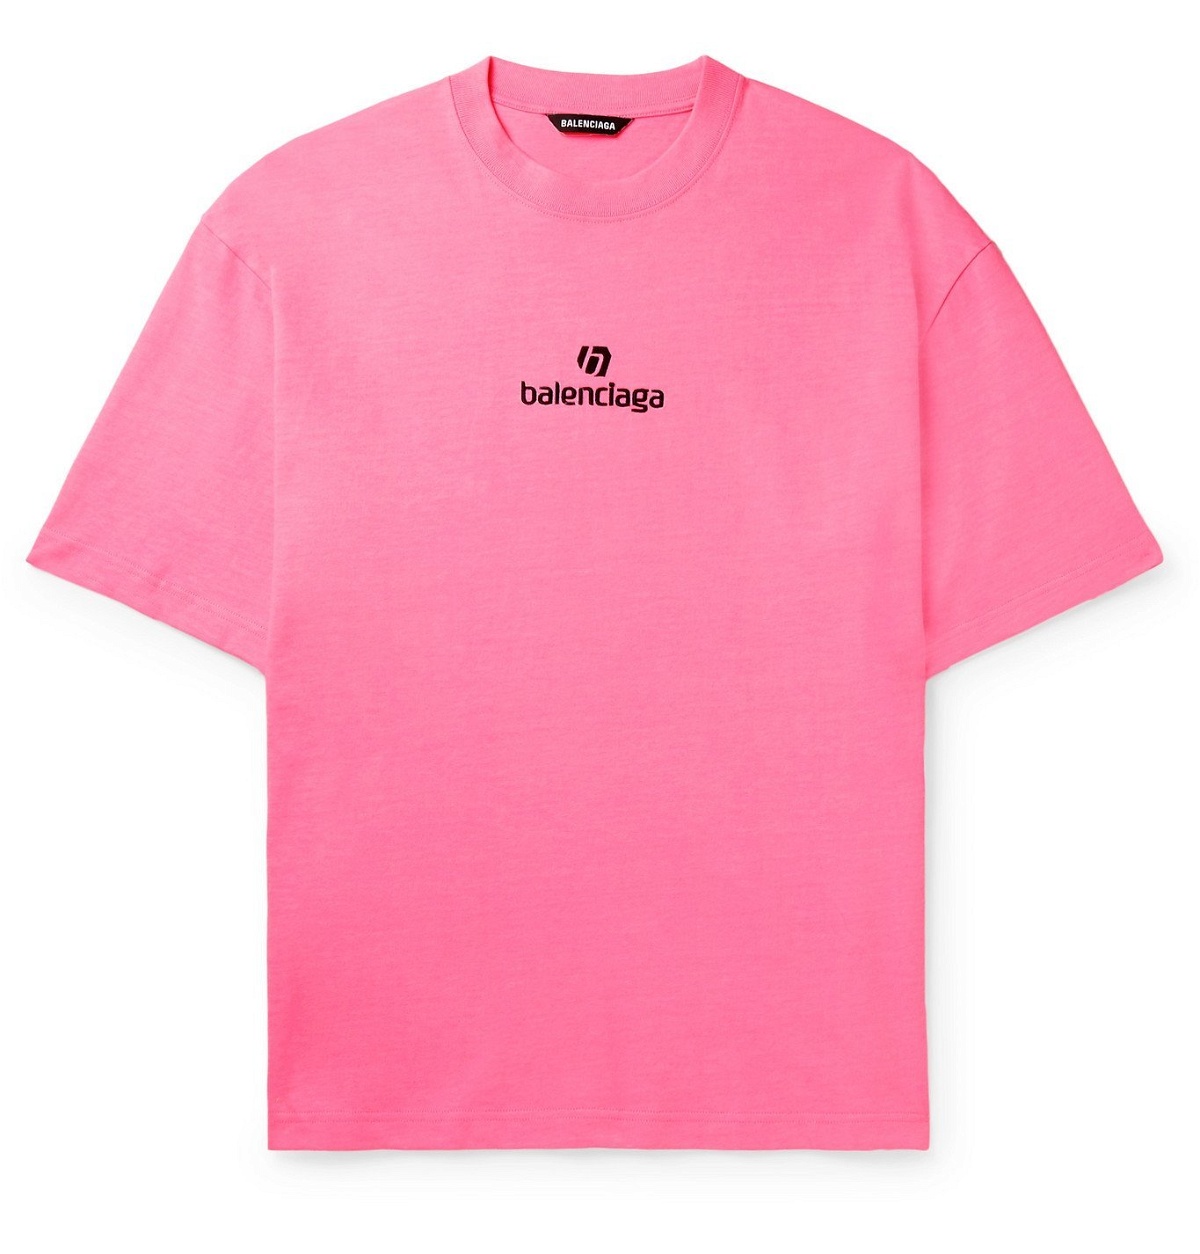 Tranquility auroch På jorden Balenciaga - Logo-Embroidered Cotton-Jersey T-Shirt - Pink Balenciaga